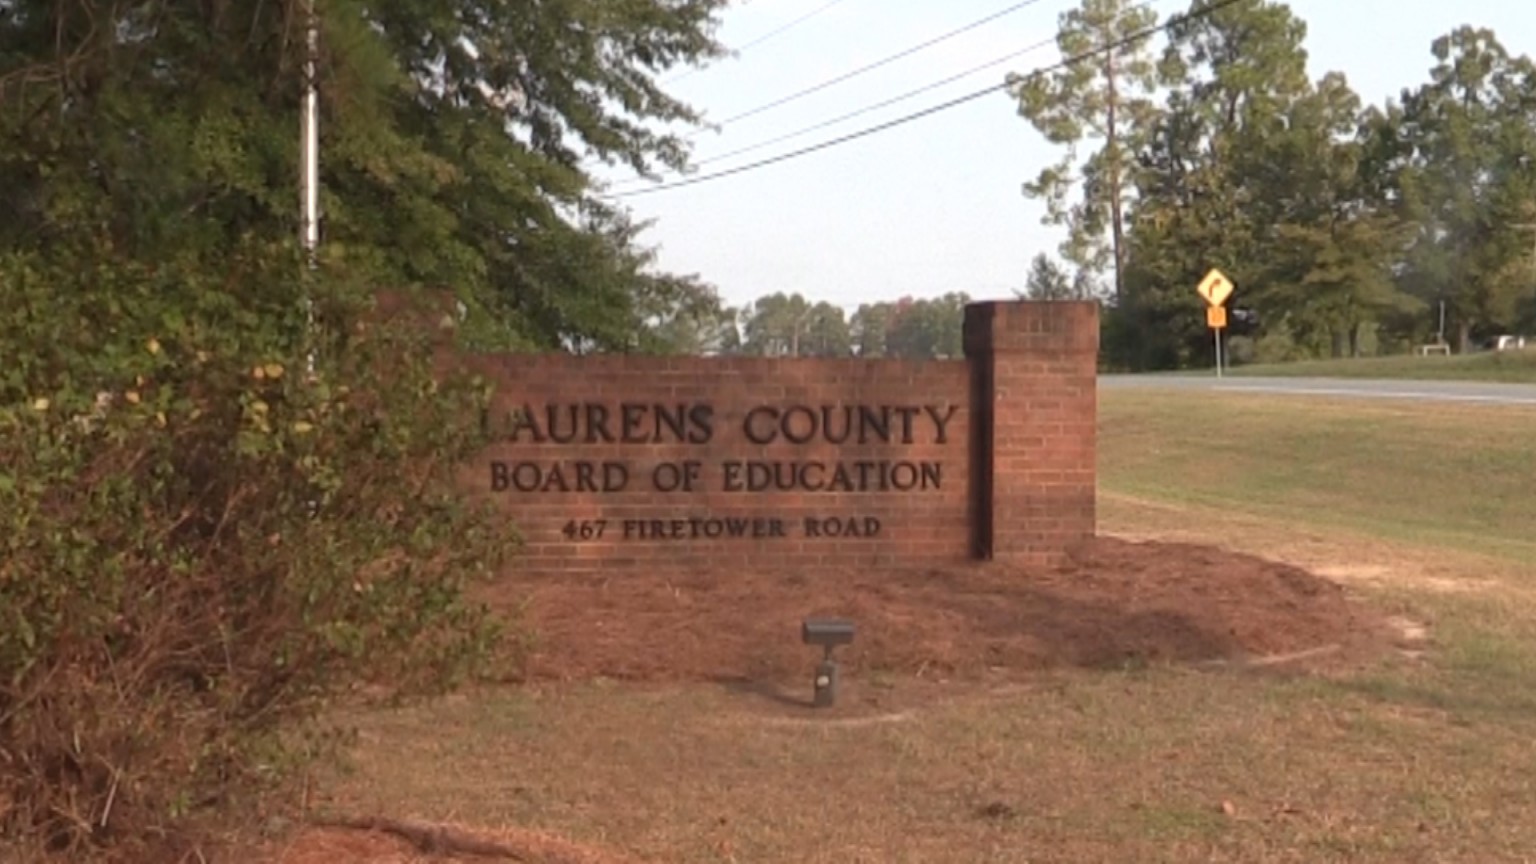 Plans underway for 2 new Laurens County schools 41NBC News WMGT DT